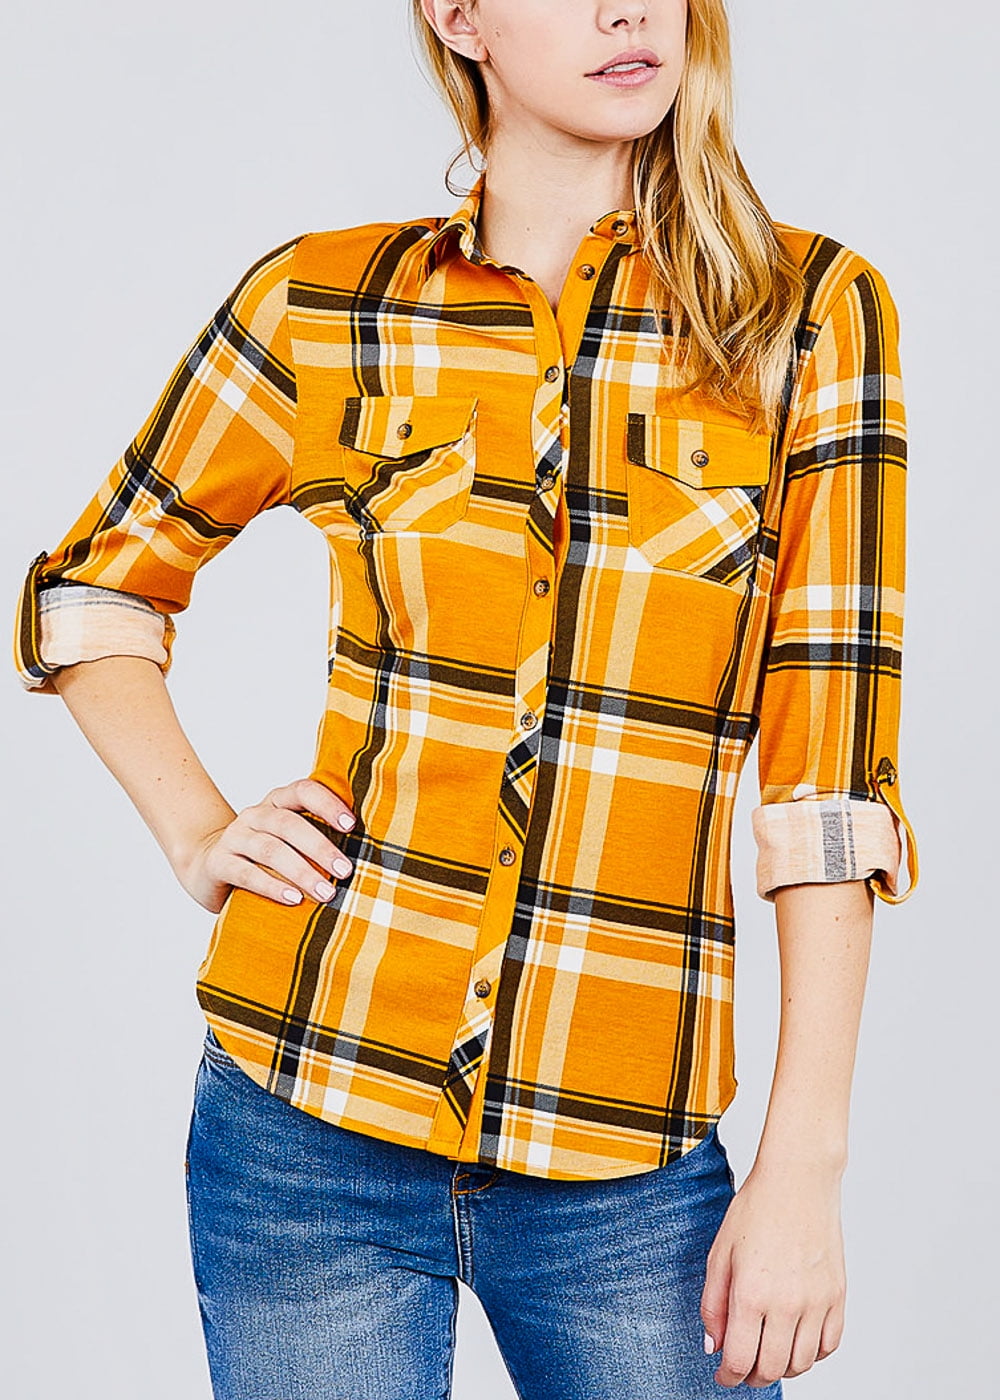 Moda Xpress Womens Button Up Shirt 3 4 Sleeve Shirt Collar Plaid Mustard Shirt Top 41220i